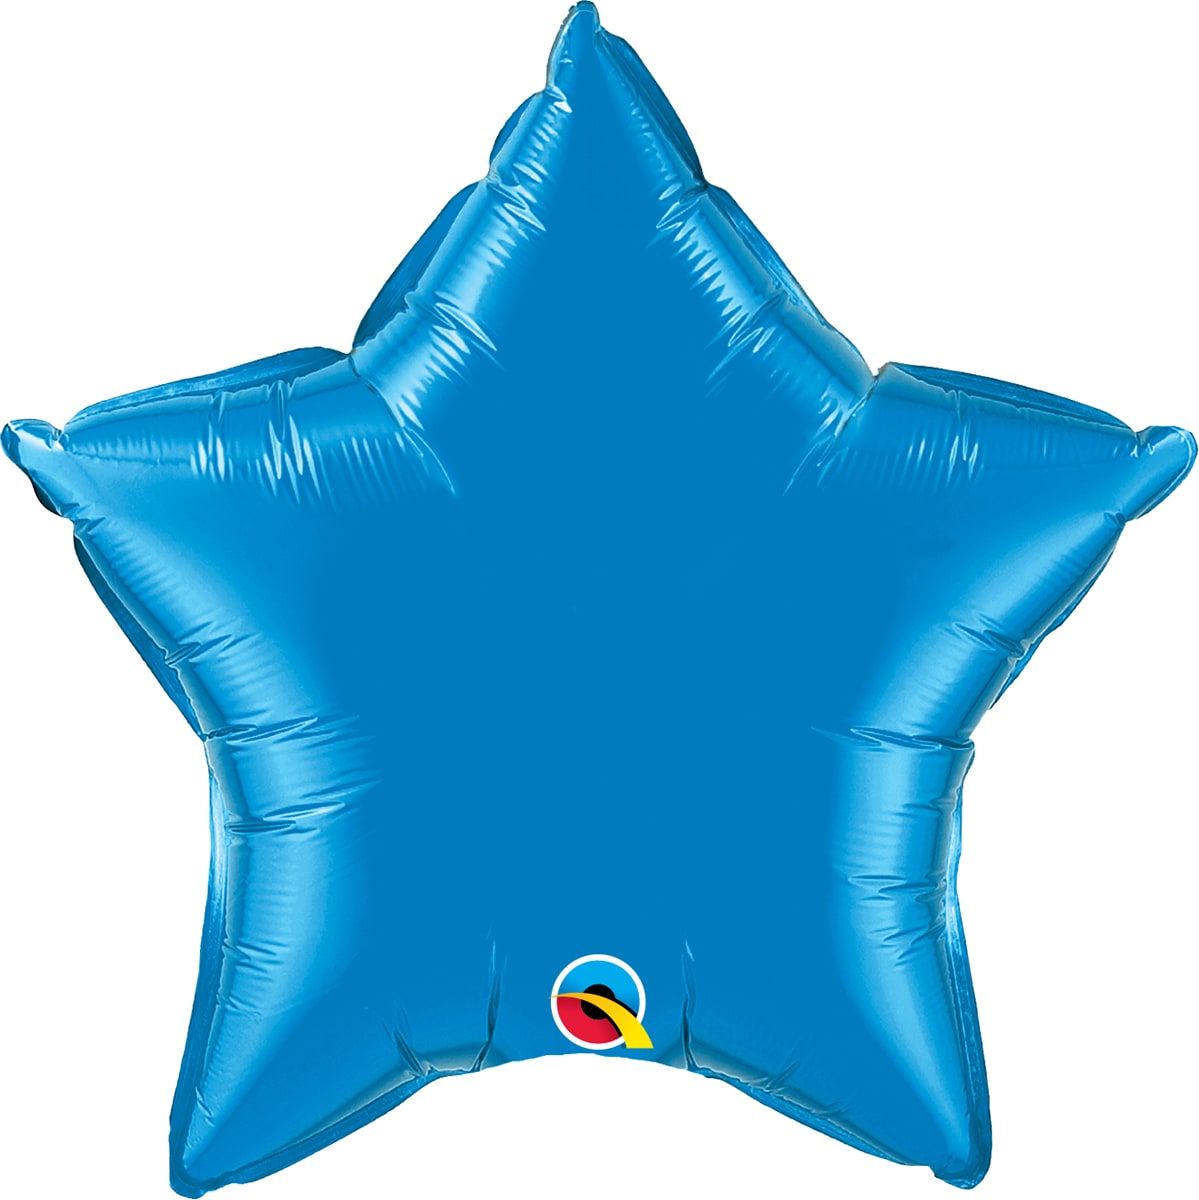 Sapphire blauwe ster folieballon